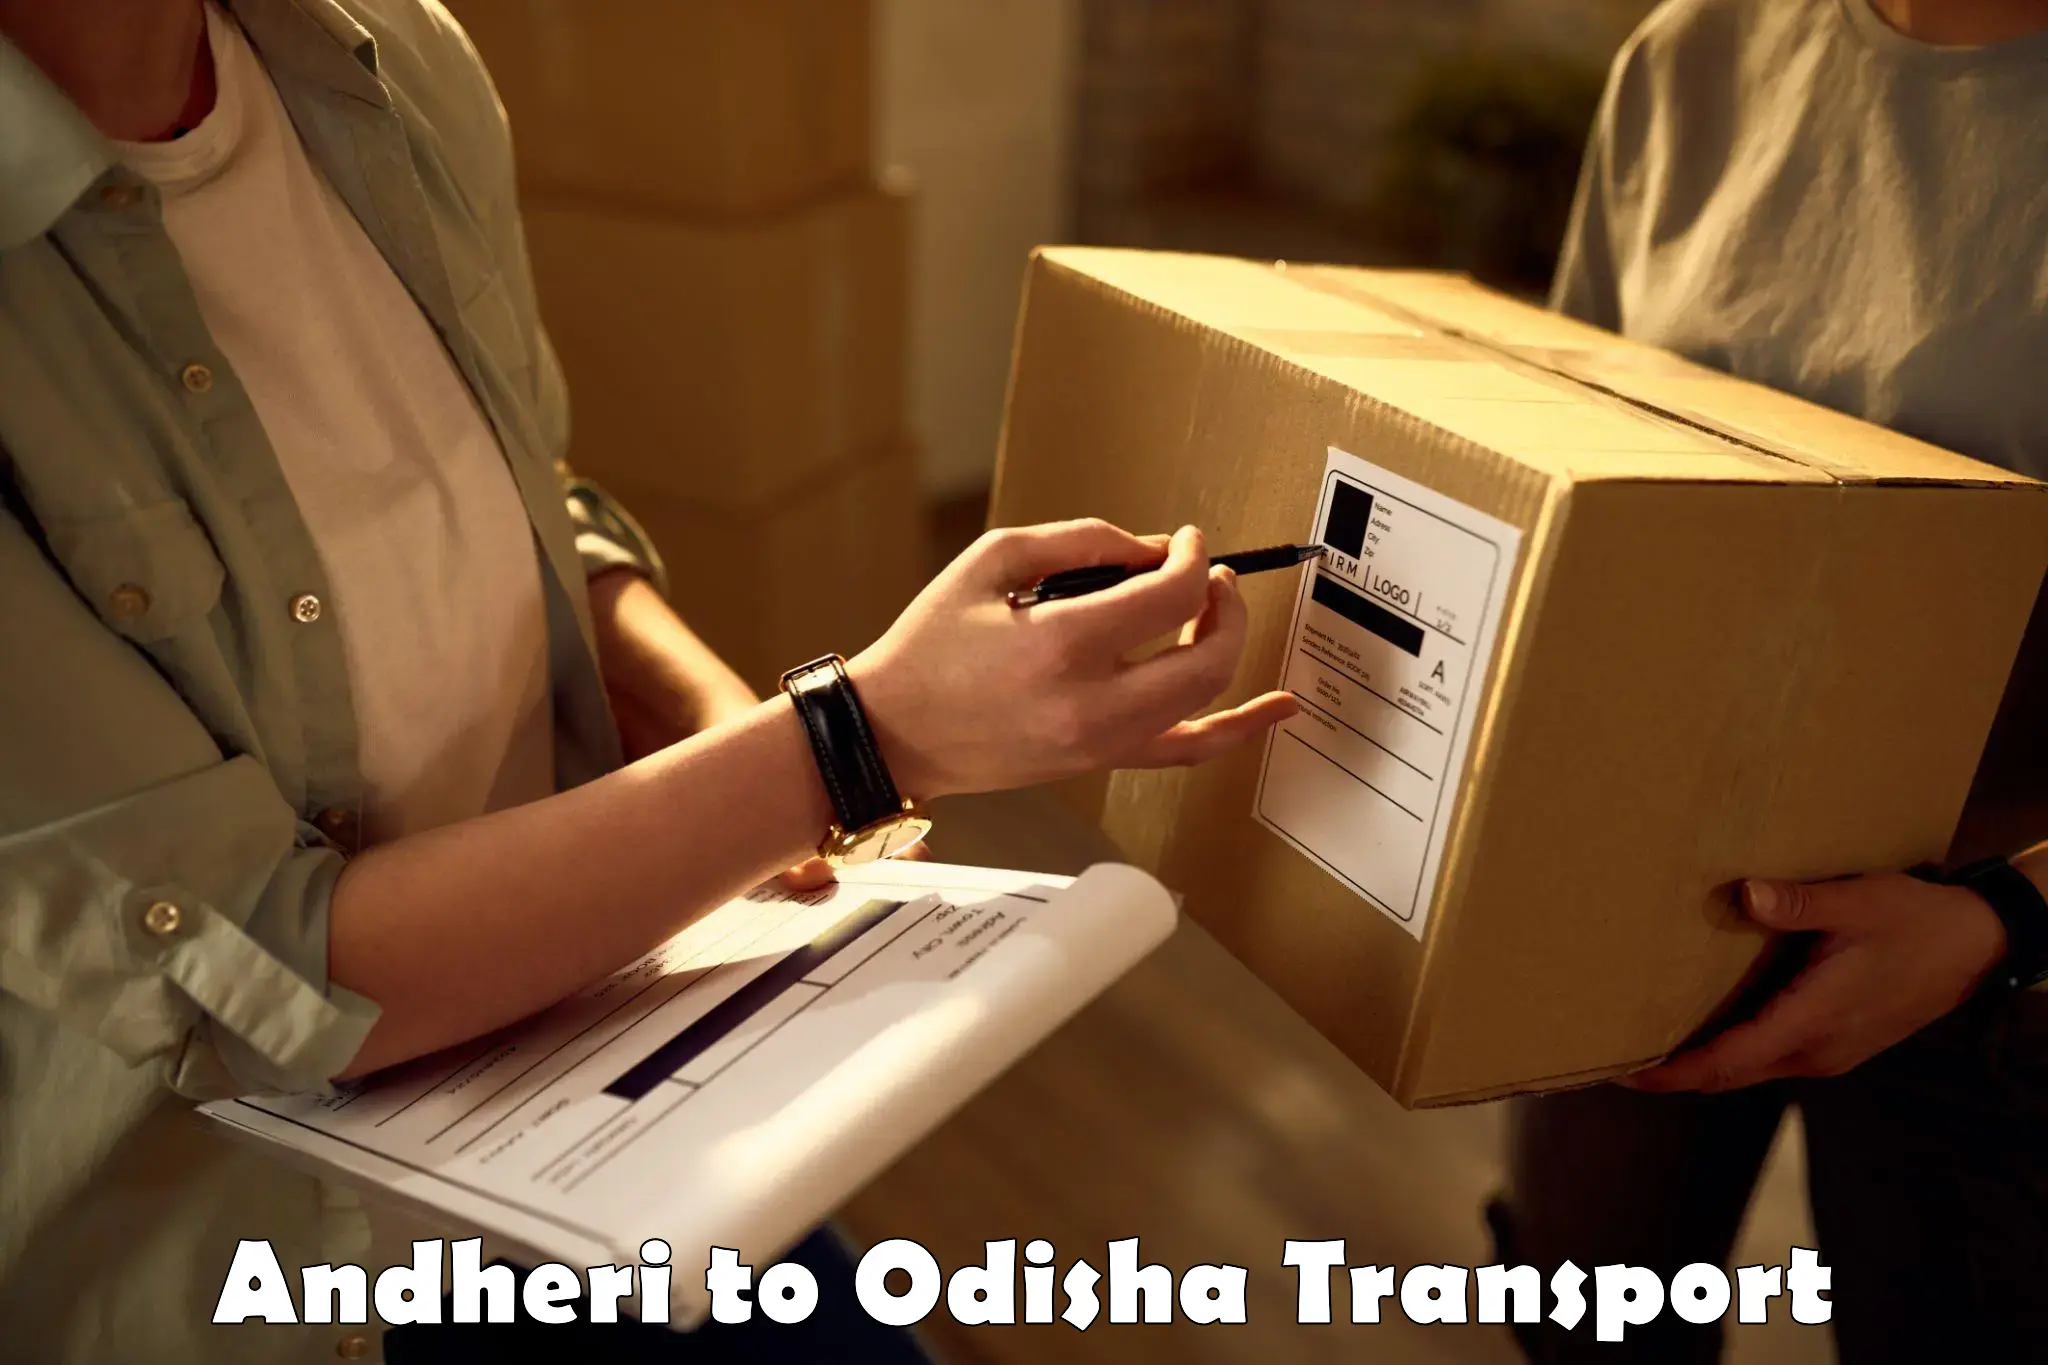 Furniture transport service Andheri to Saintala